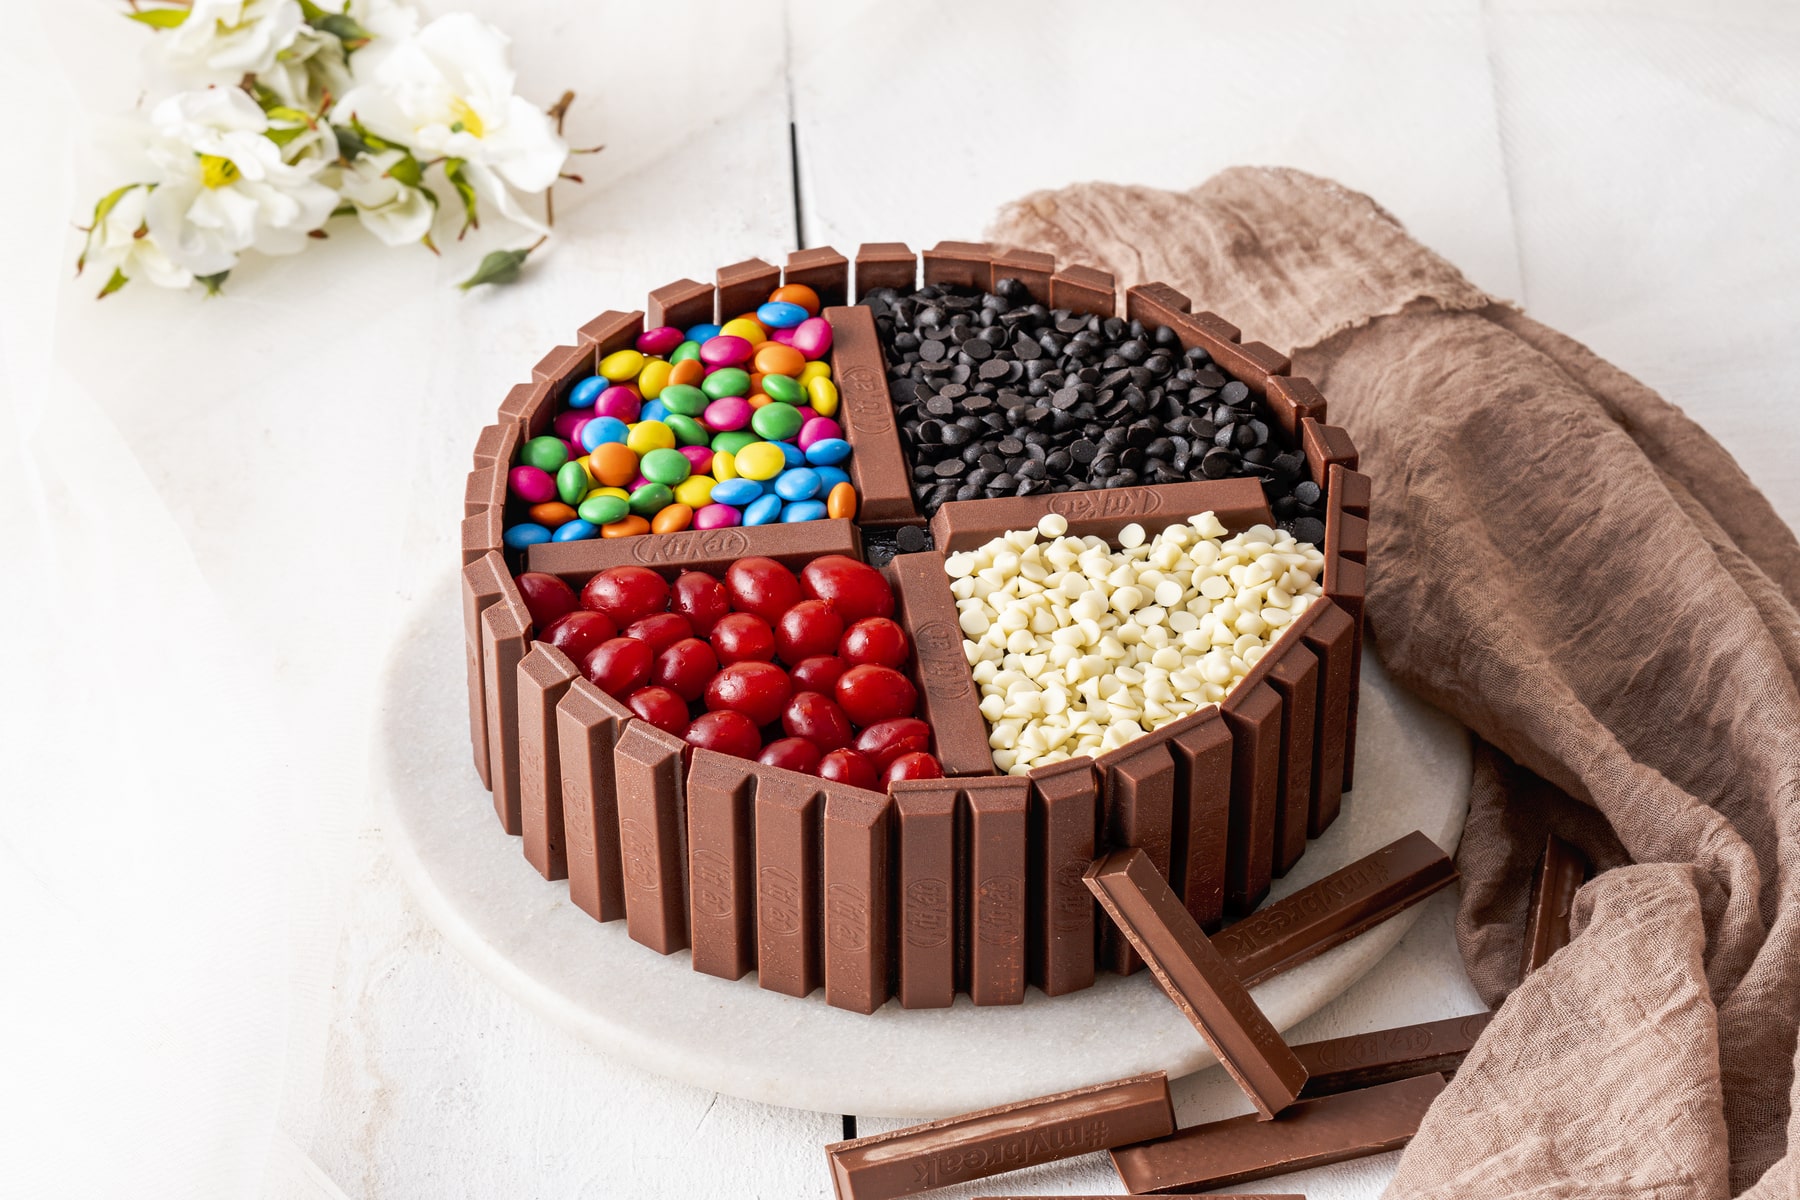 KitKat Cake | Chocolate cake designs, Chocolate kit kat cake, Kitkat cake